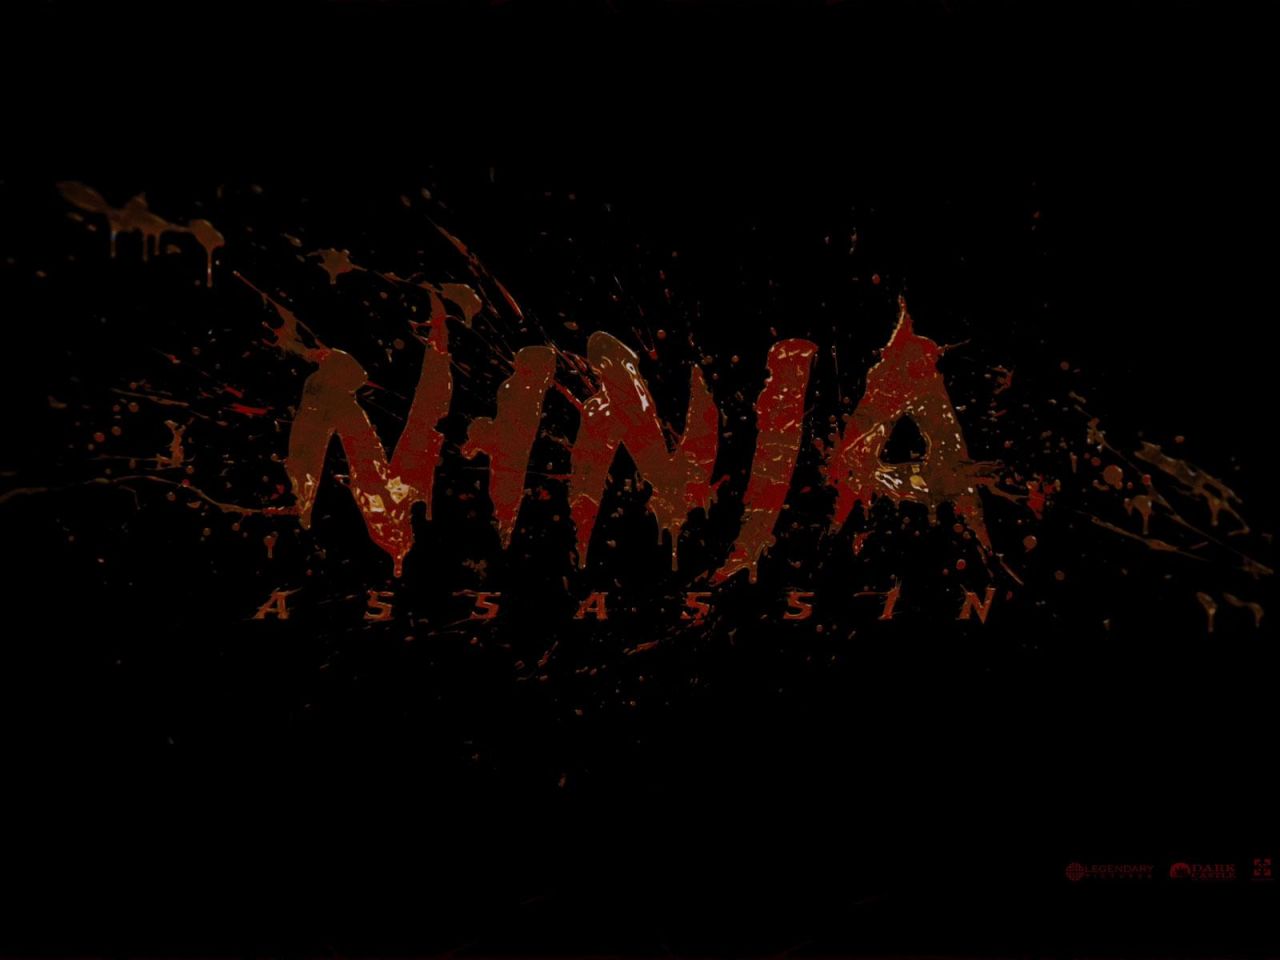 Фильм Ниндзя-убийца | Ninja Assassin - лучшие обои для рабочего стола